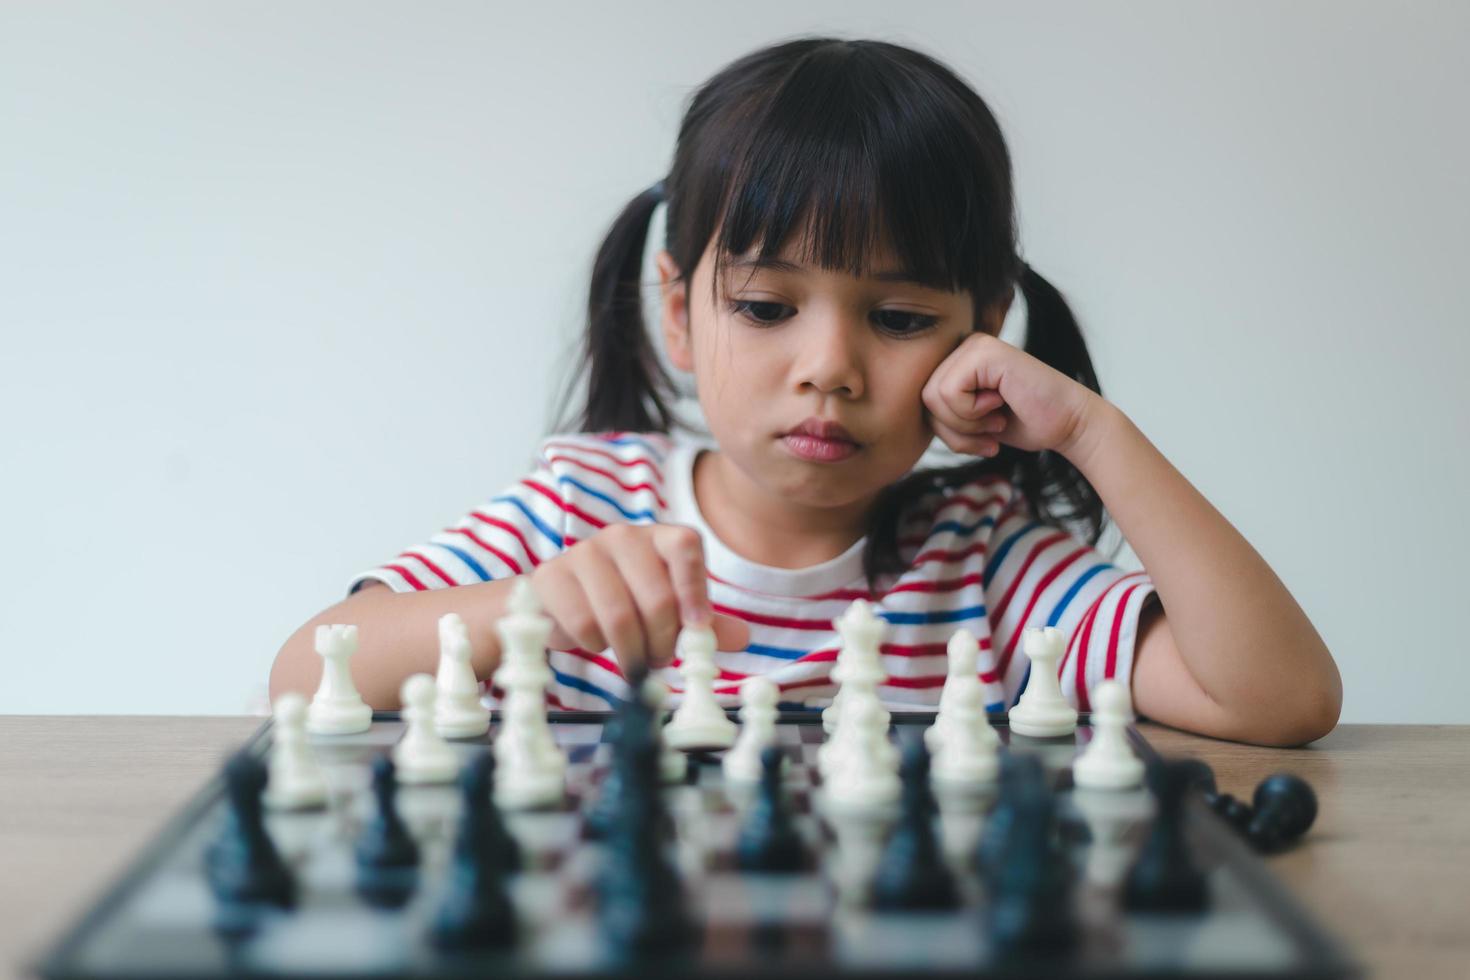 petite fille asiatique jouant aux échecs à la maison.une partie d'échecs photo